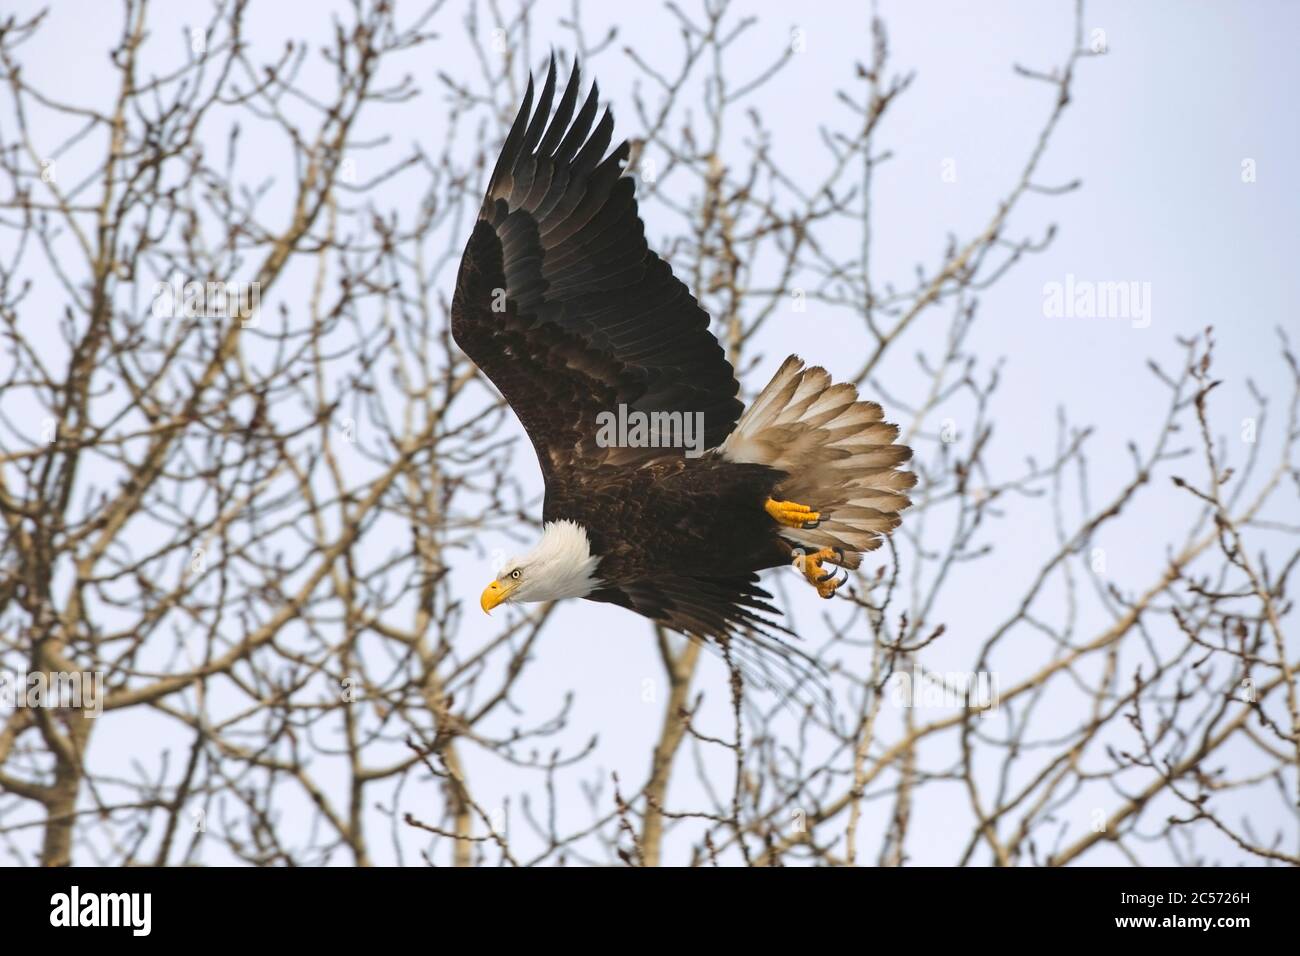 Aquila calva in volo mentre caccia, mostrando taloni affilati. Foto Stock